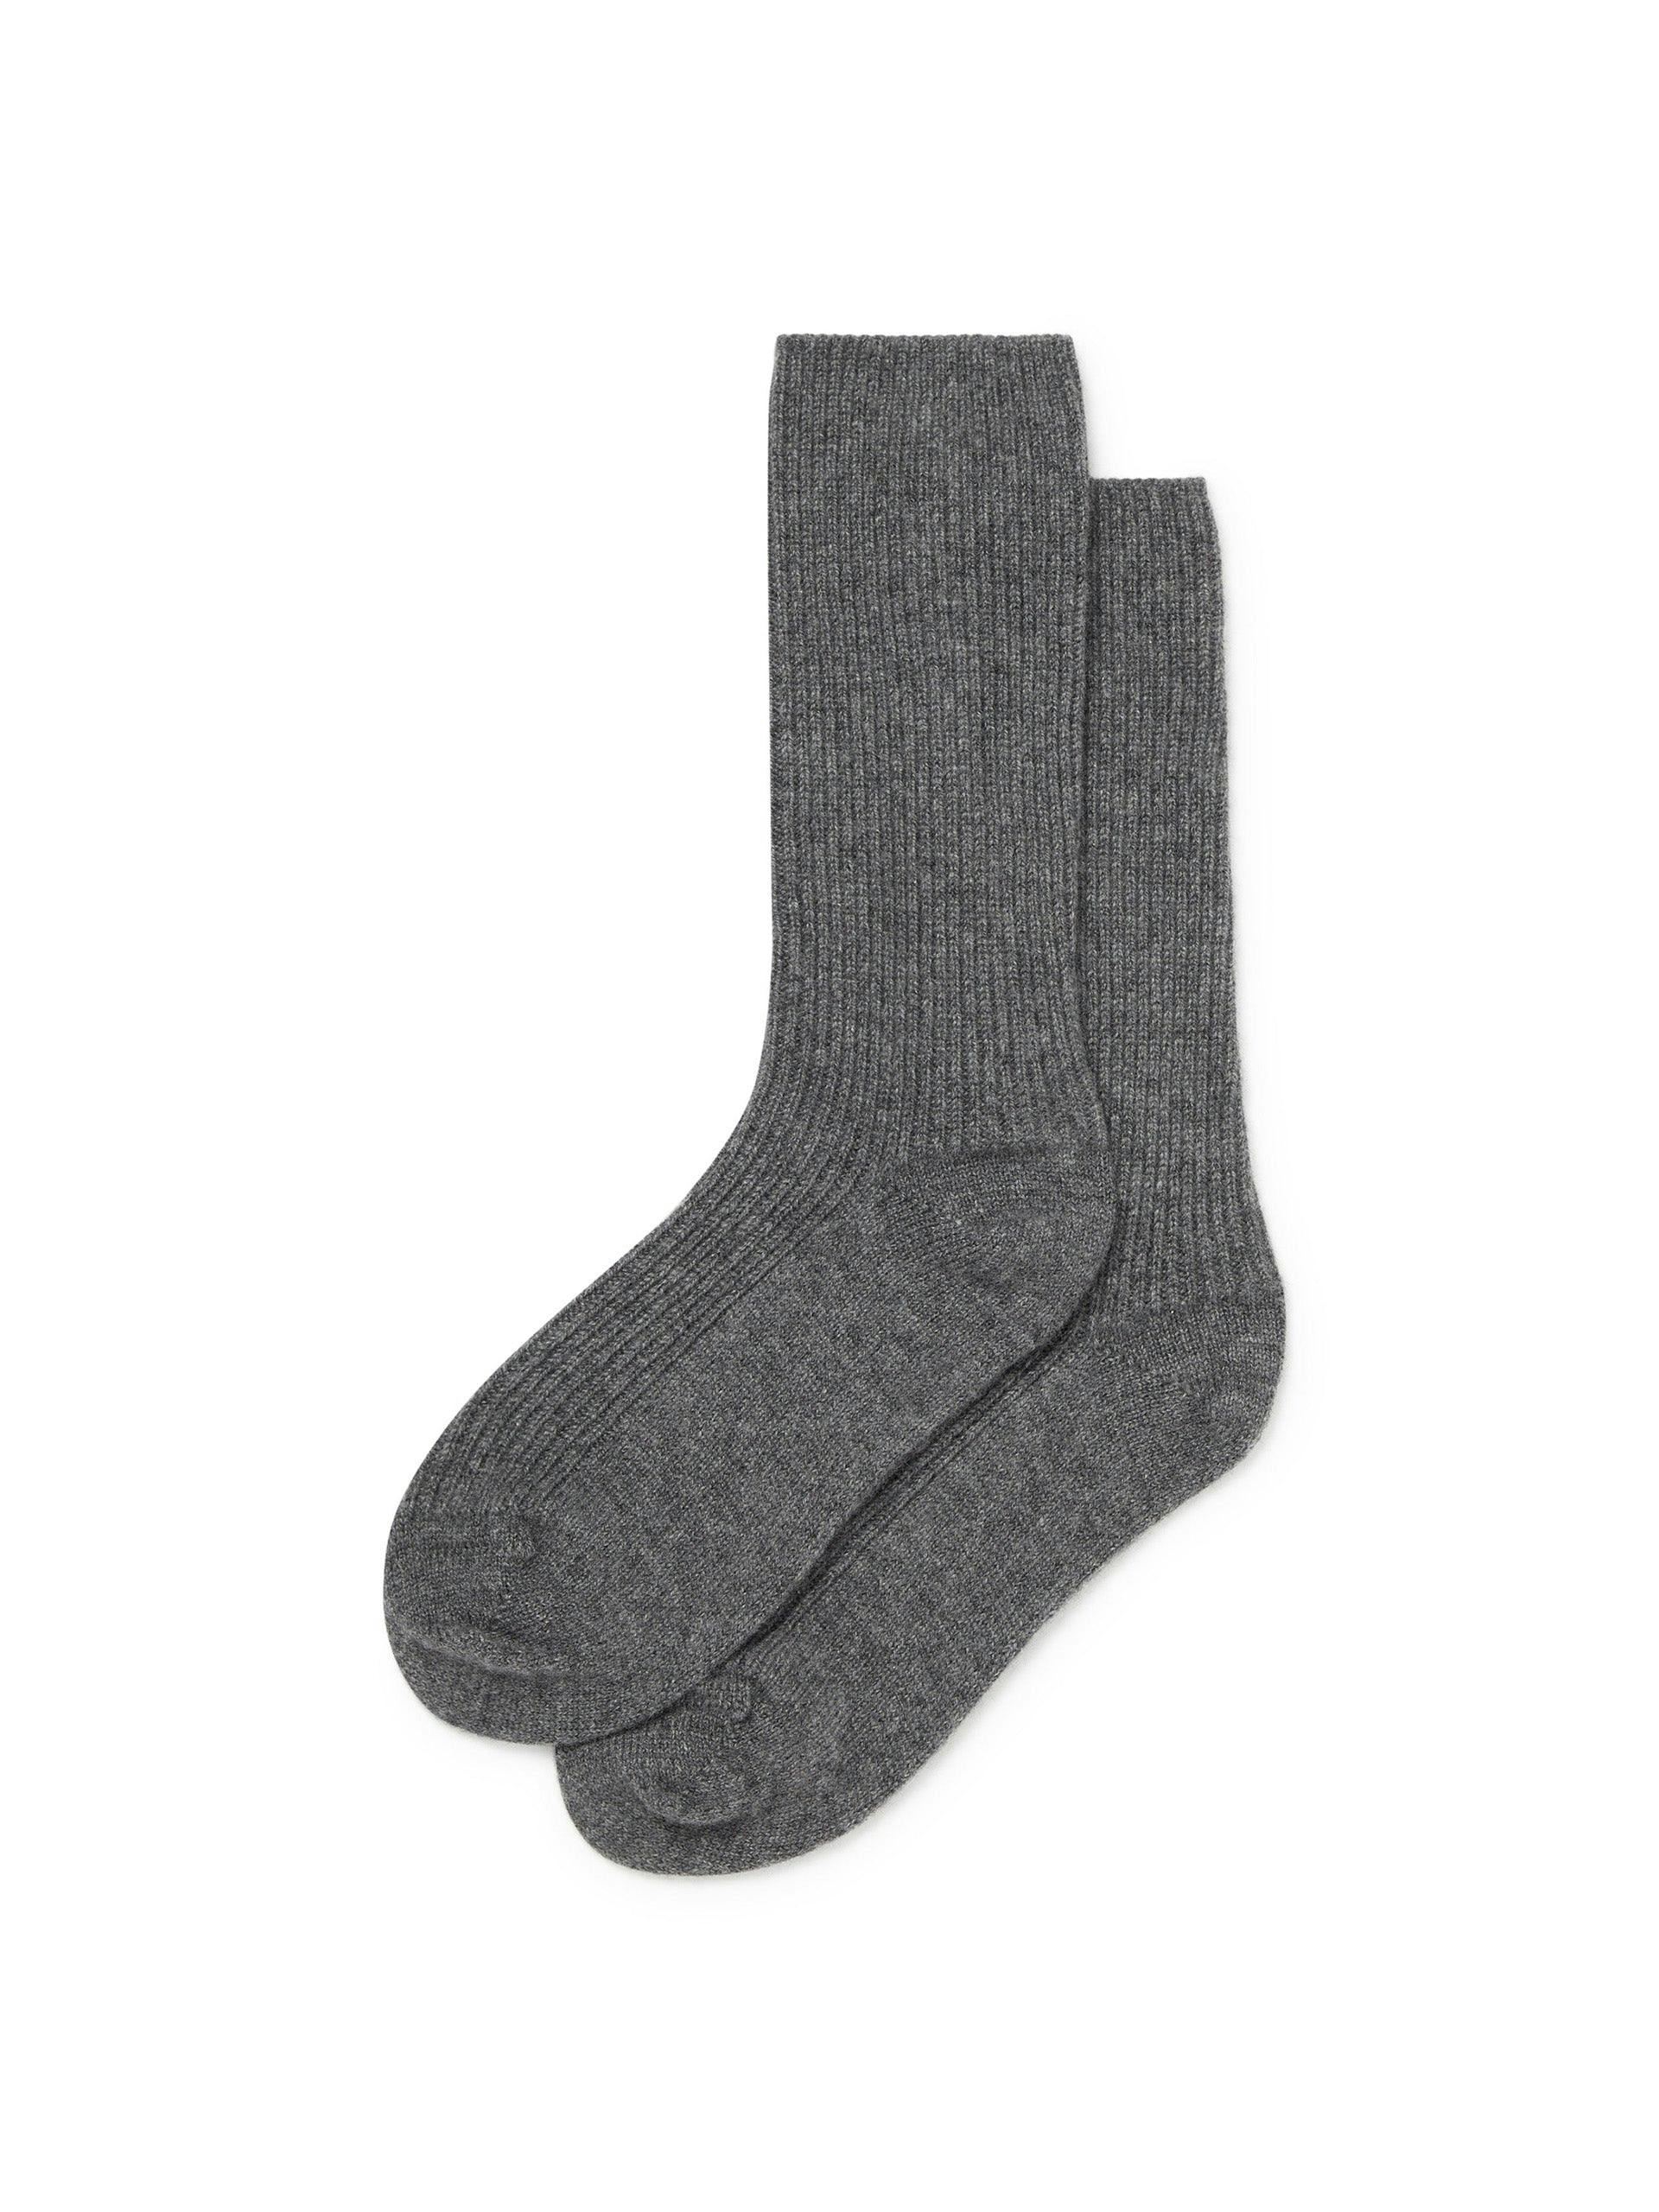 Women’s cashmere socks in Slate